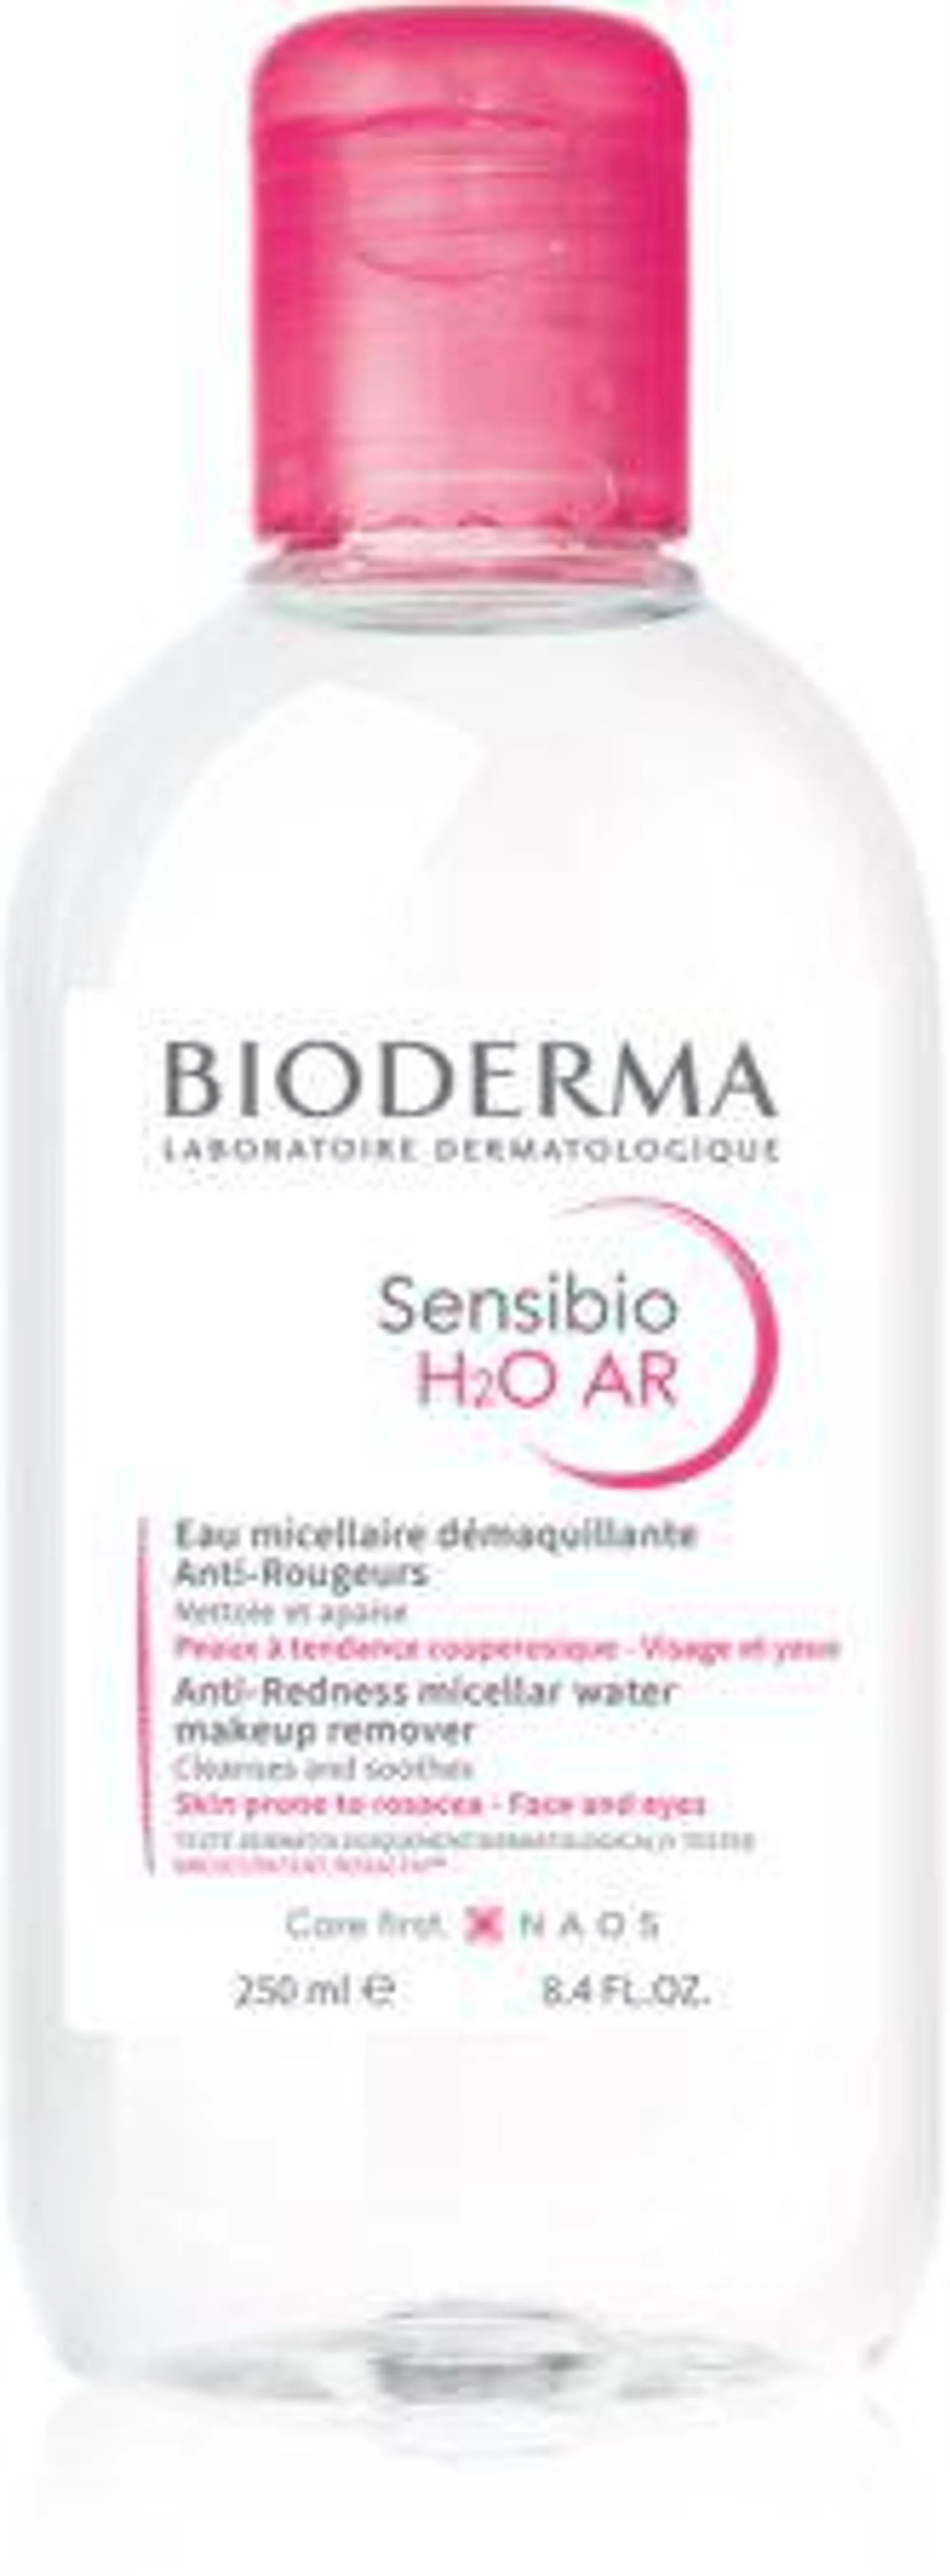 Sensibio H2O AR